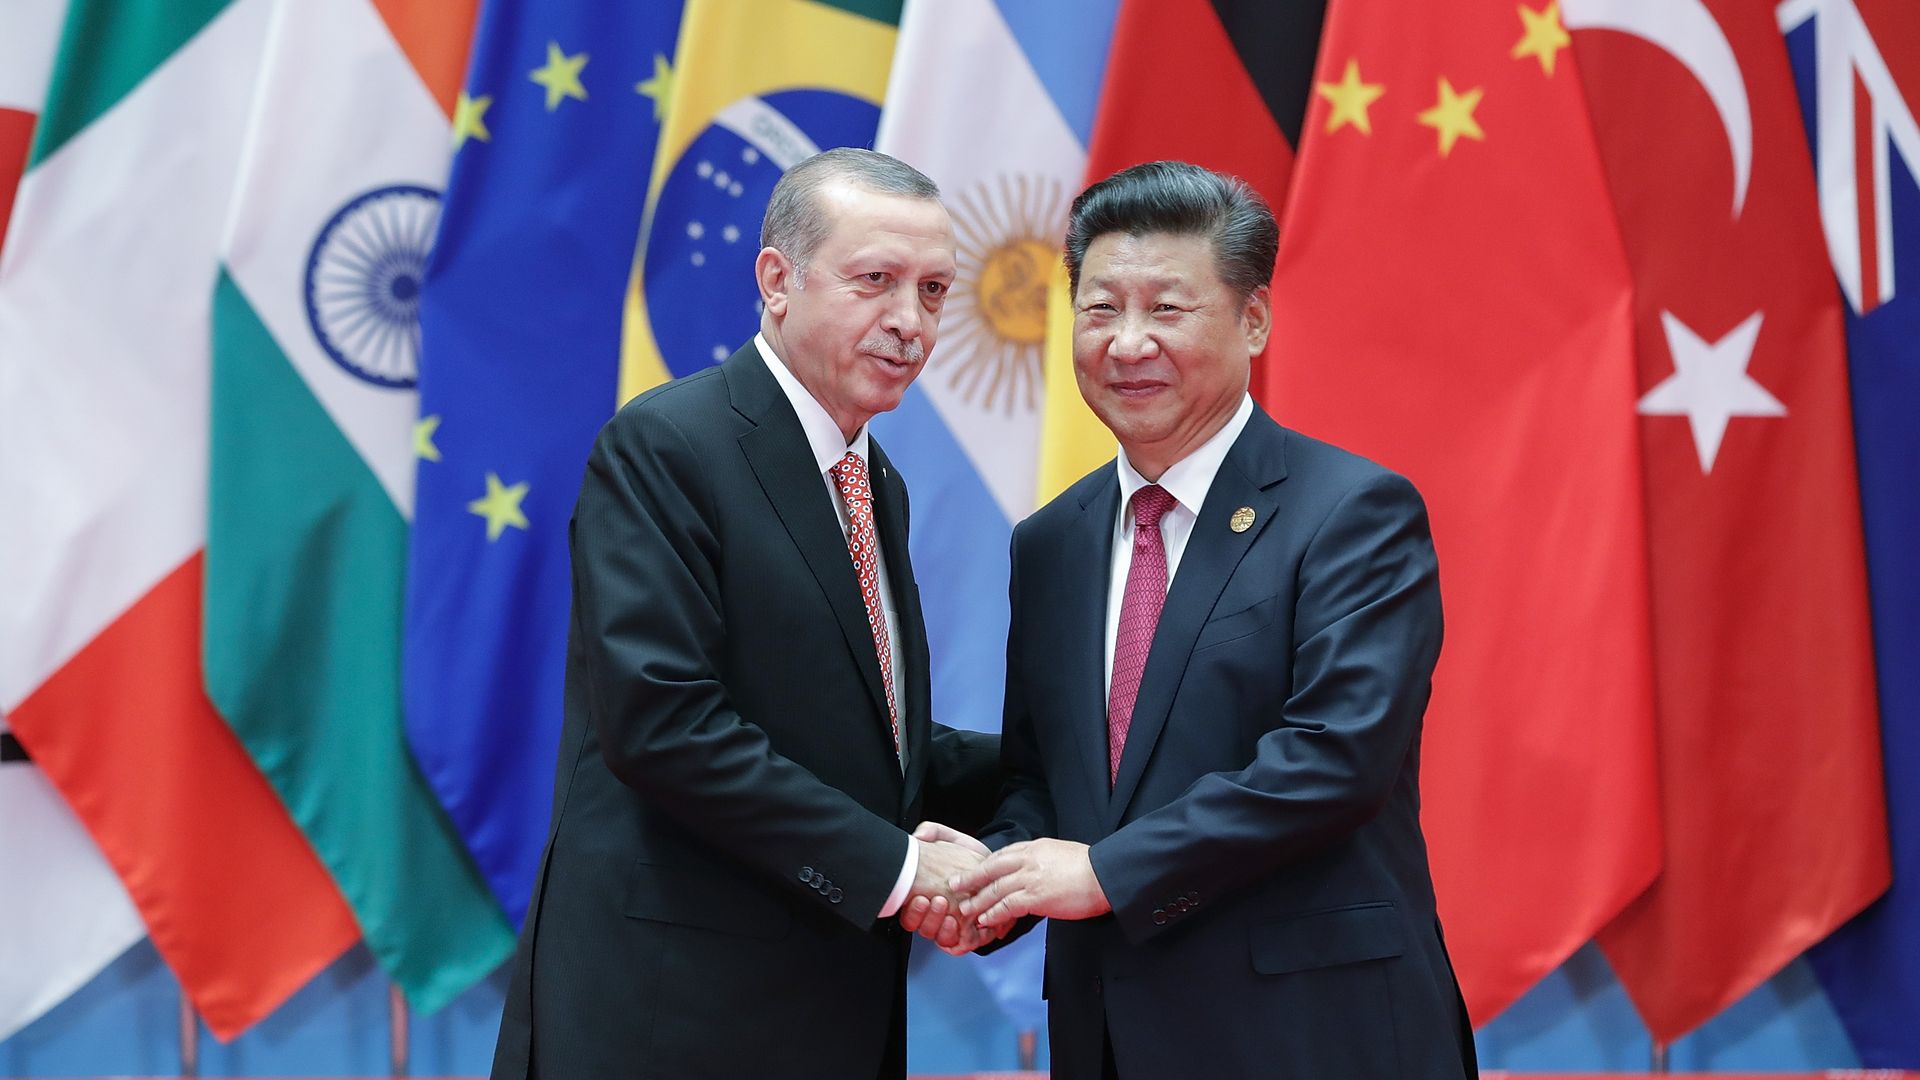 Photo of Erdogan and Xi shaking hands.